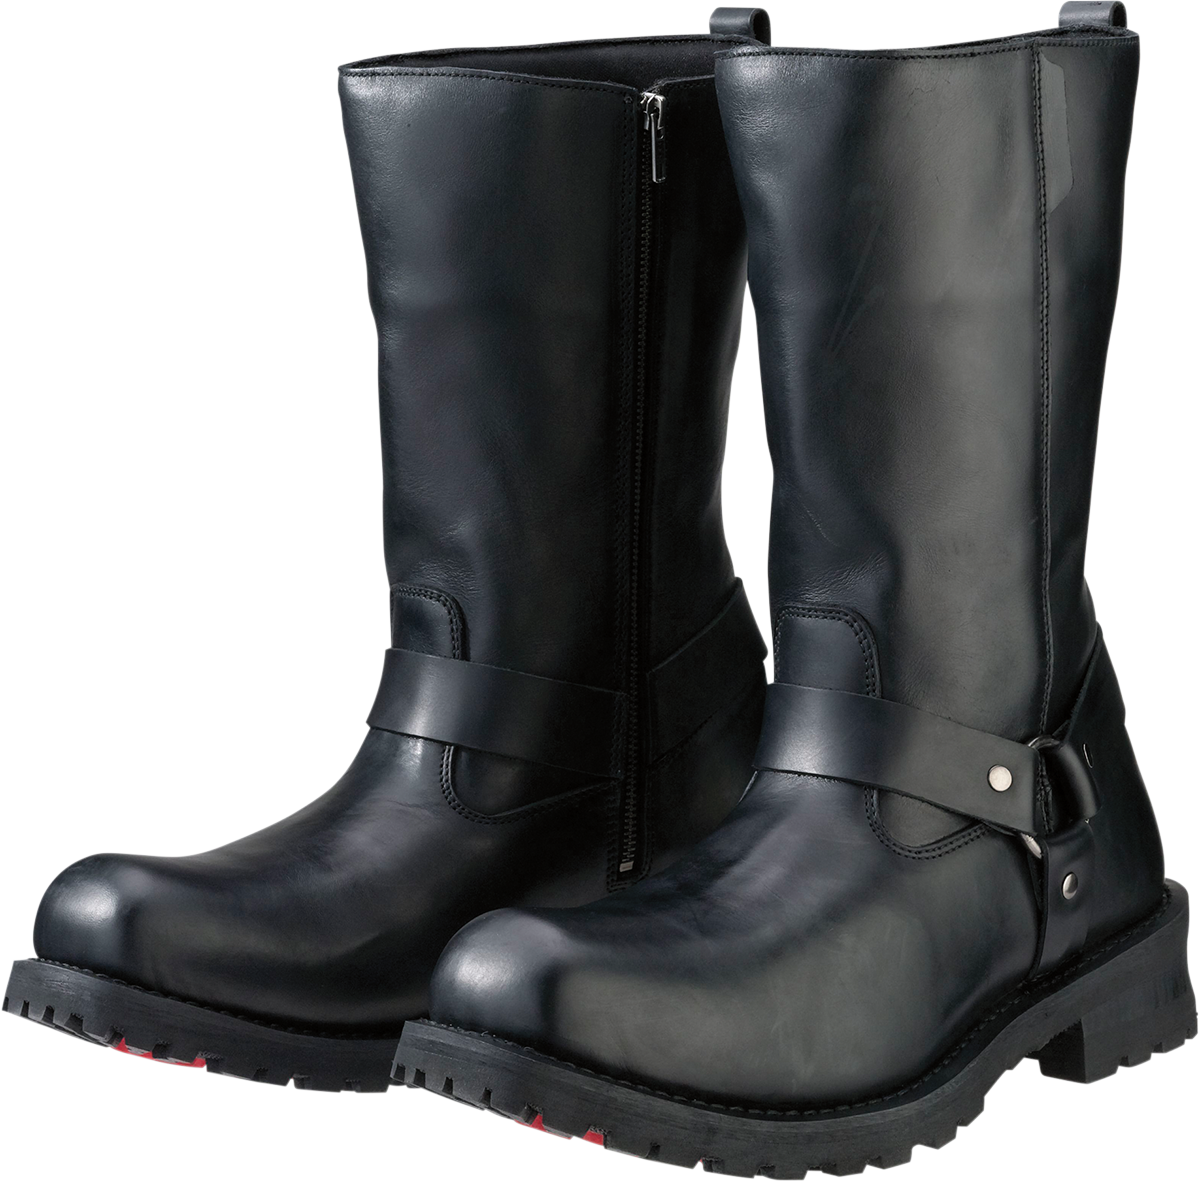 Z1R Riot Boots - Black - US 12 3403-0761